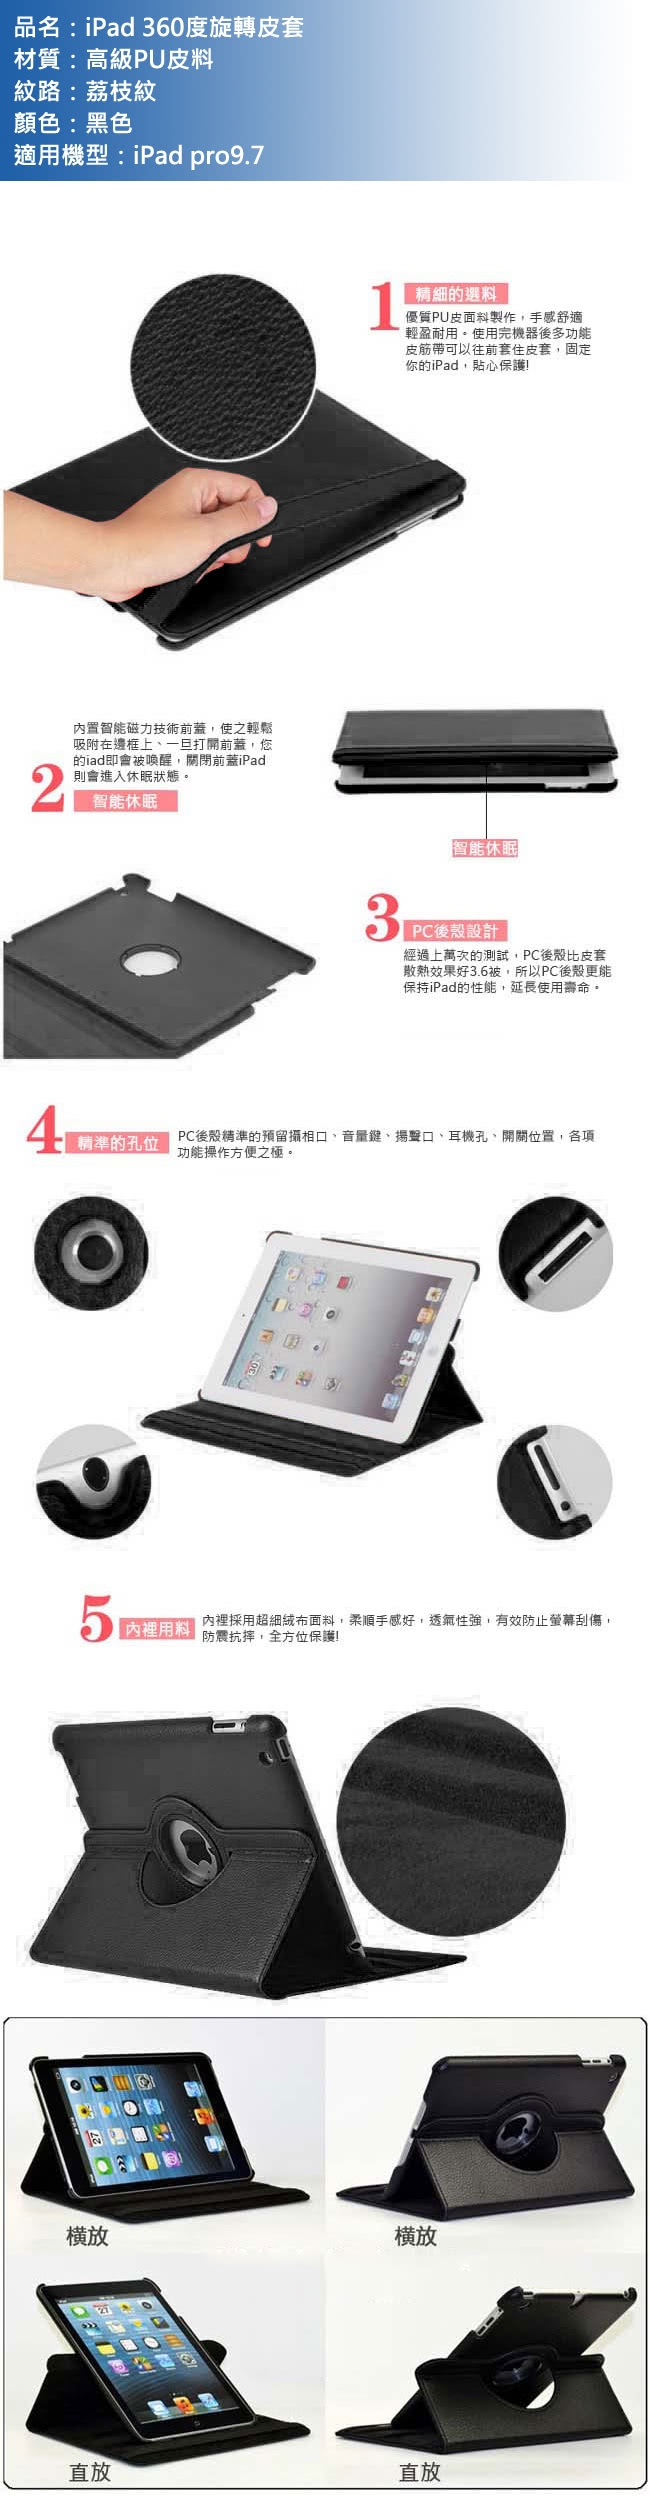 【LOTUS】蘋果 apple iPad pro9.7 360度旋轉皮套 保護套